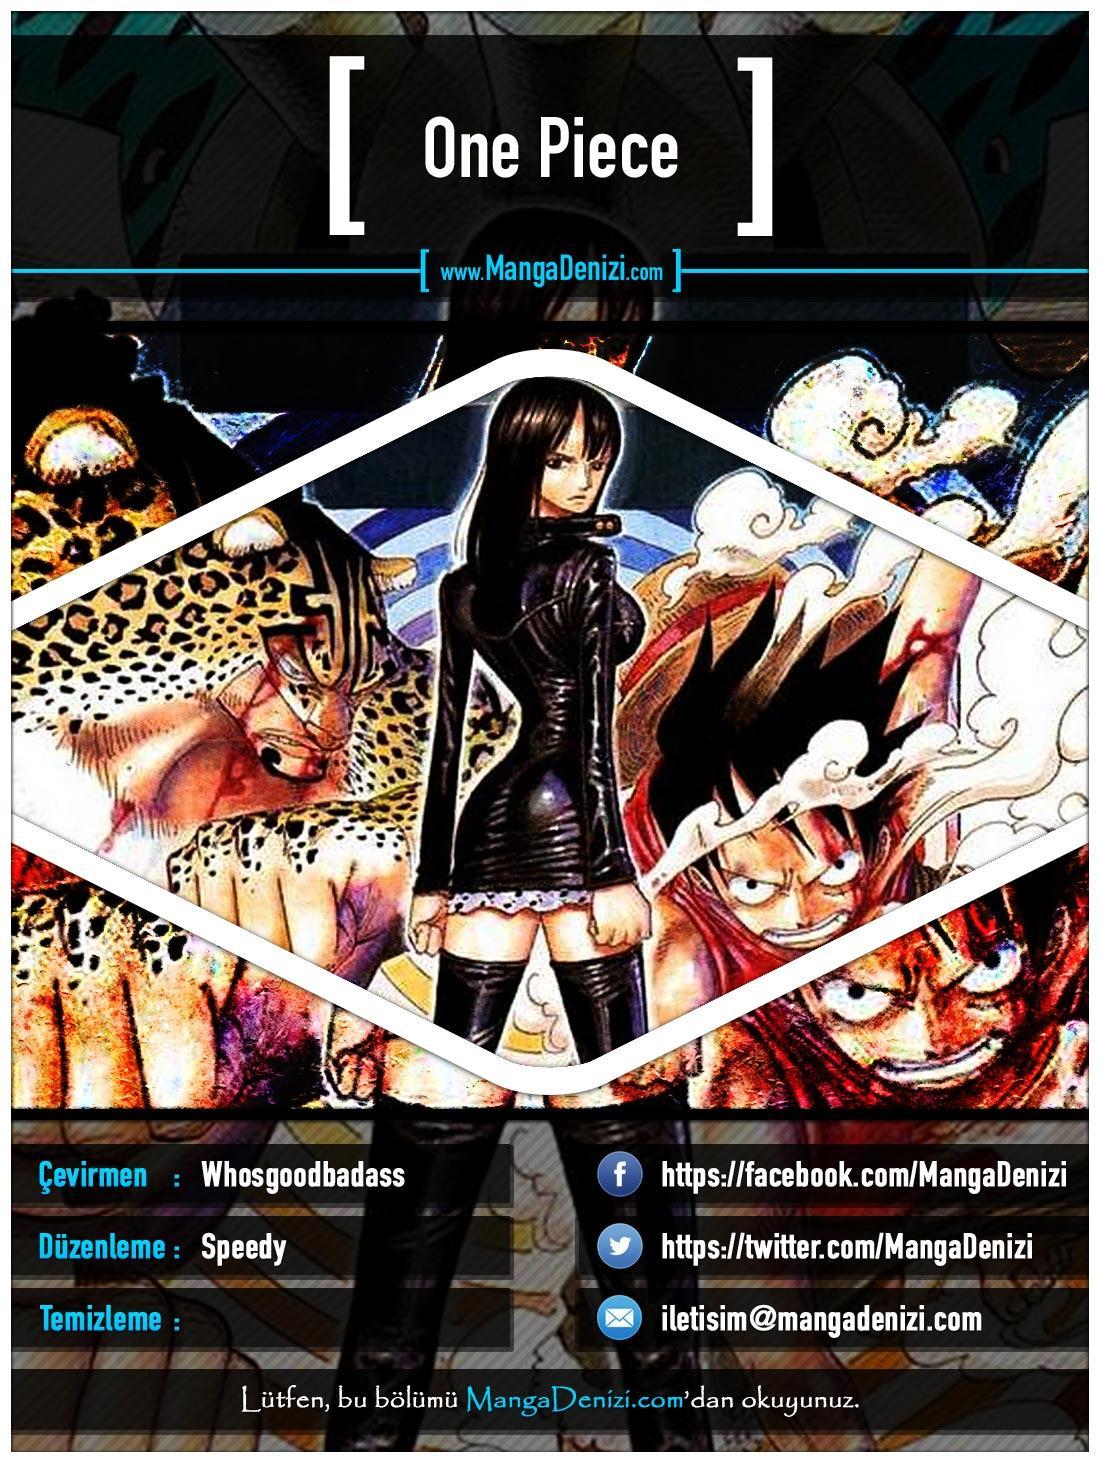 One Piece [Renkli] mangasının 0430 bölümünün 1. sayfasını okuyorsunuz.